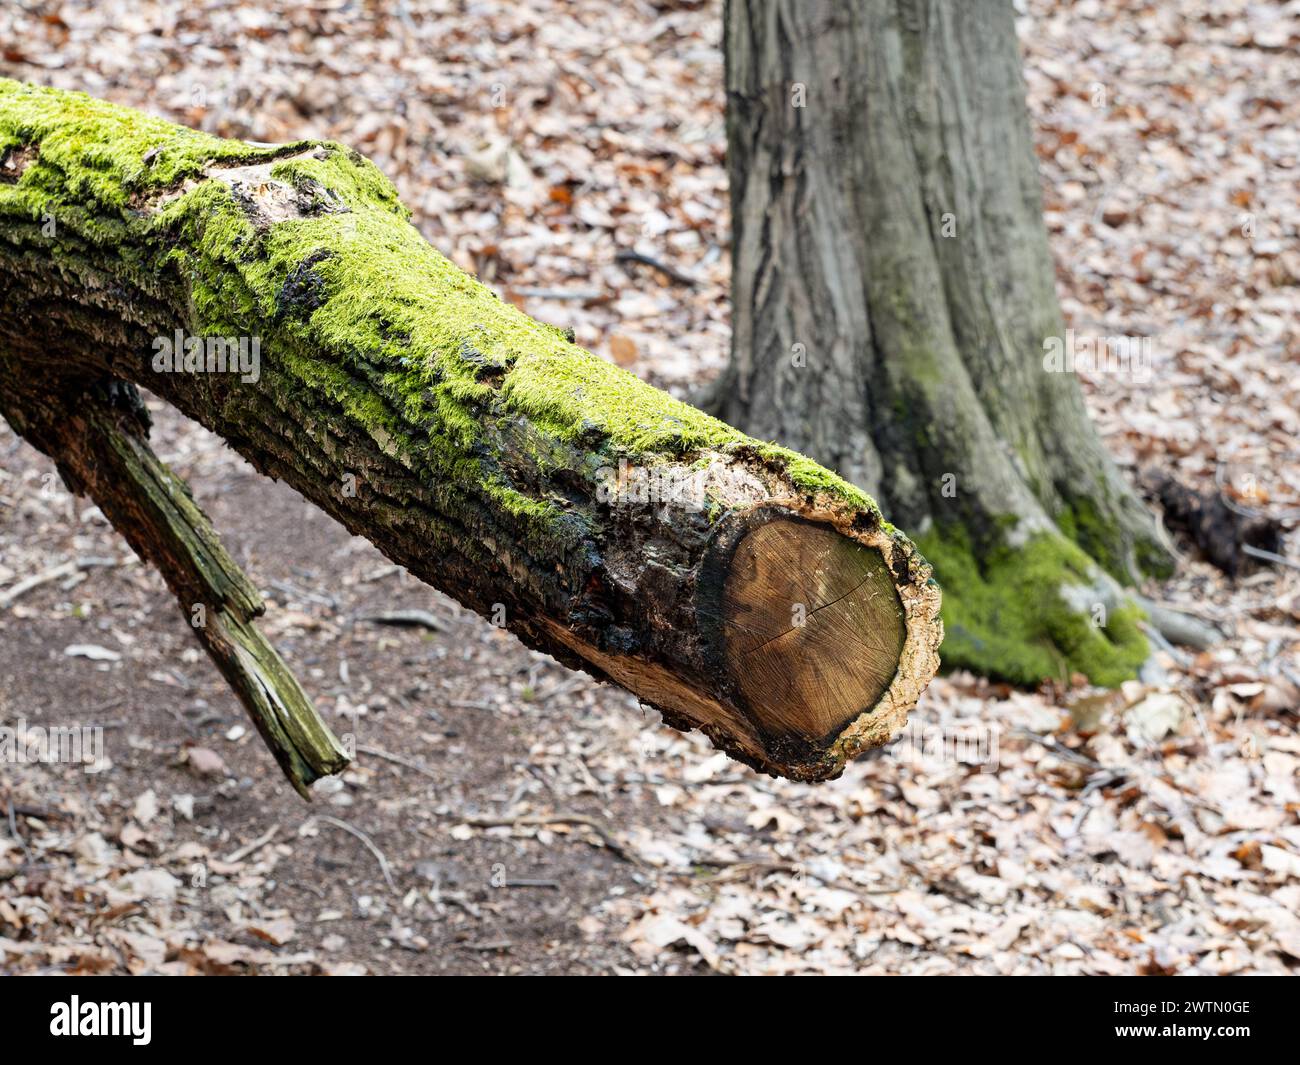 Mousse sur un tronc d'arbre mouillé en gros plan. Bois pourri dans une forêt. L'arbre tombé est un espace de vie important pour les insectes et les petits animaux. Banque D'Images